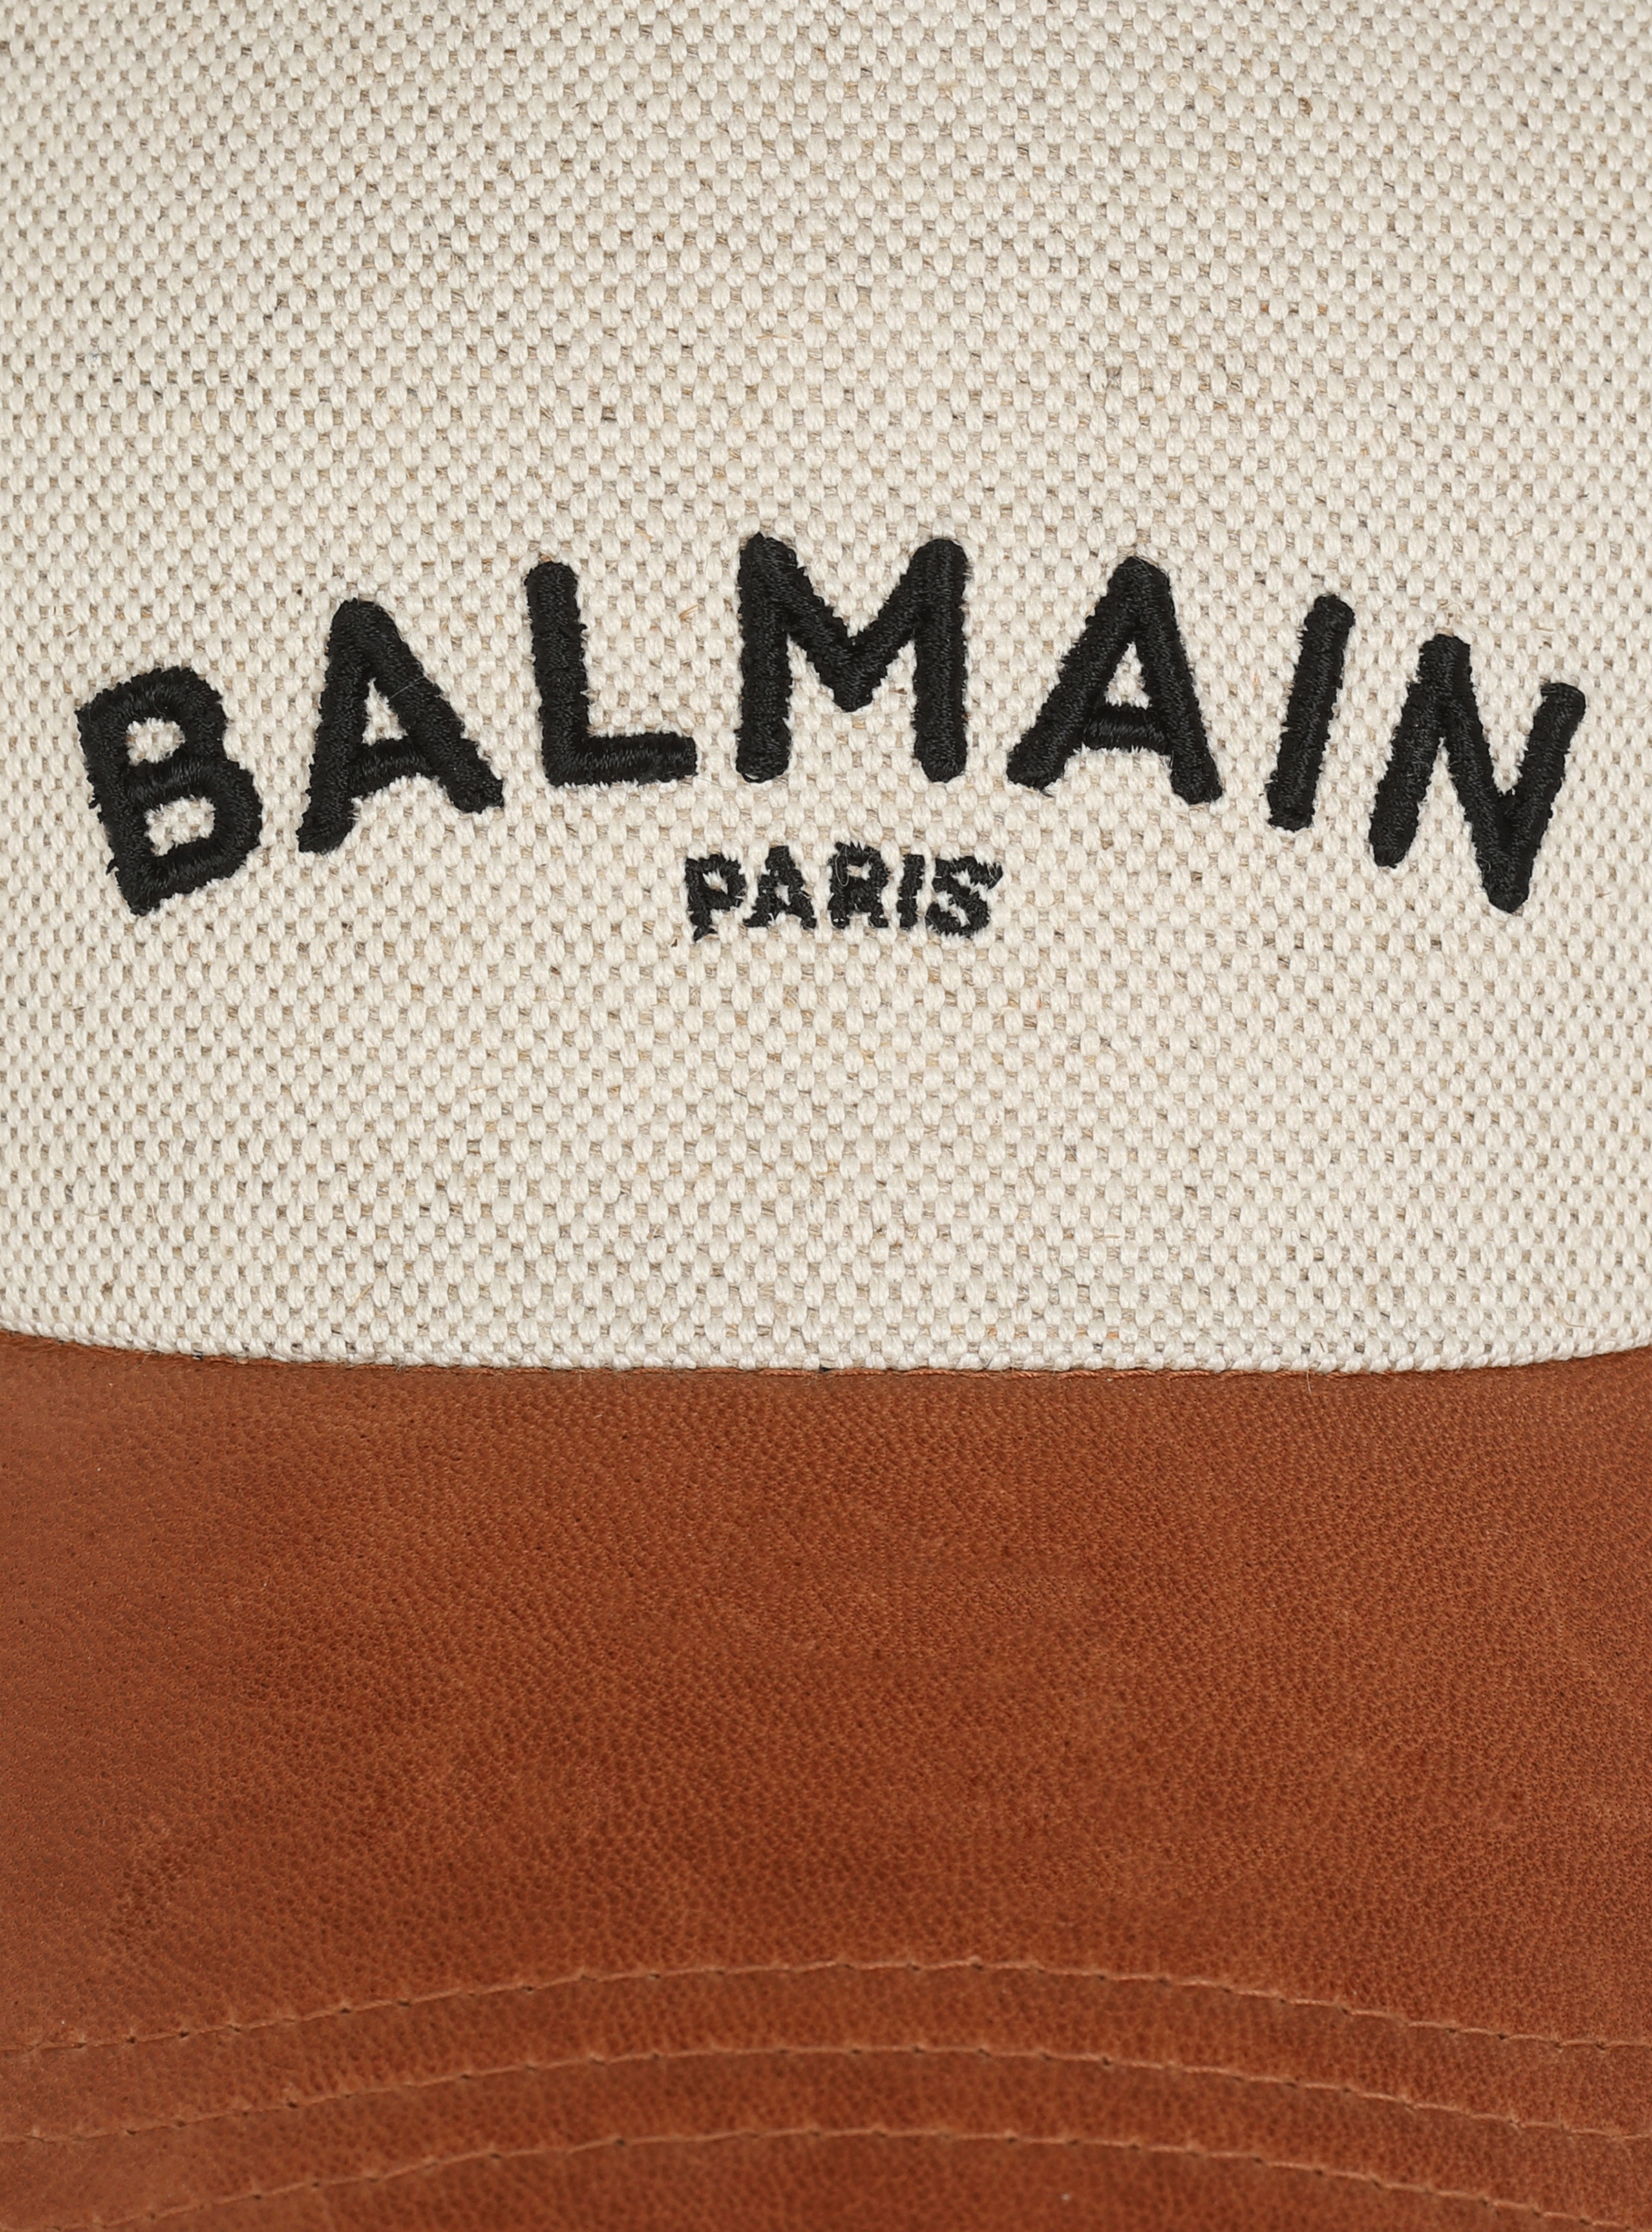 Cotton cap with Balmain logo - 4